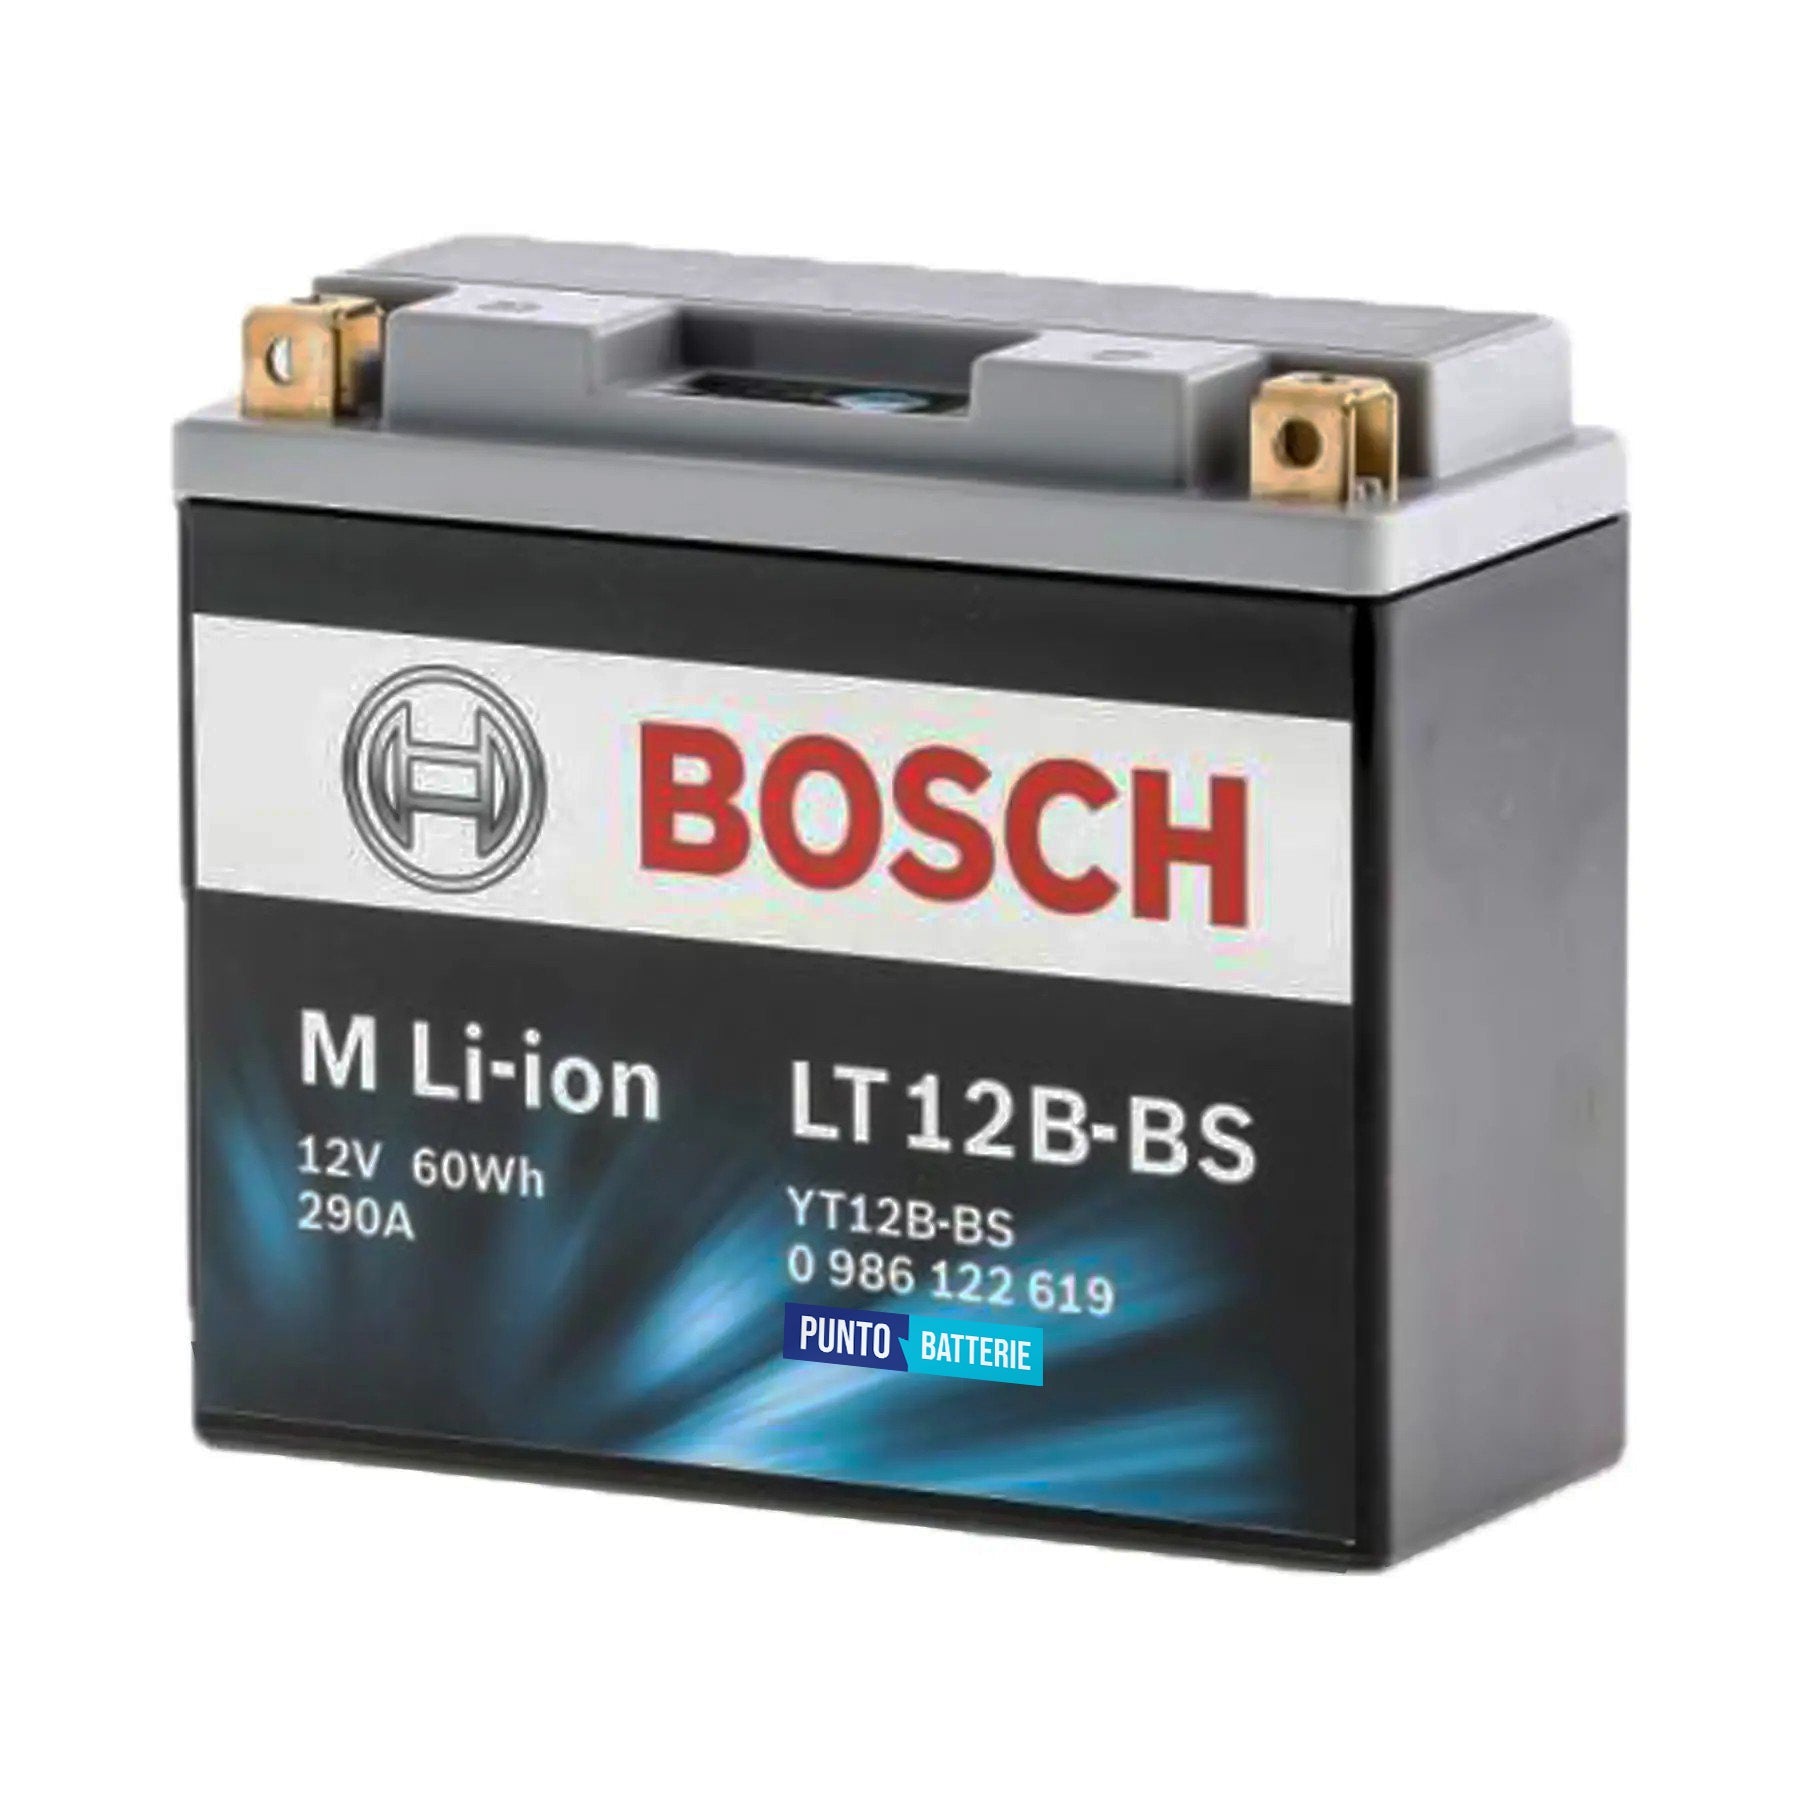 Batteria originale Bosch M Li-ion LT12B-BS, dimensioni 150 x 65 x 130, polo positivo a sinistra, 12 volt, 5 amperora, 300 ampere. Batteria per moto, scooter e powersport.